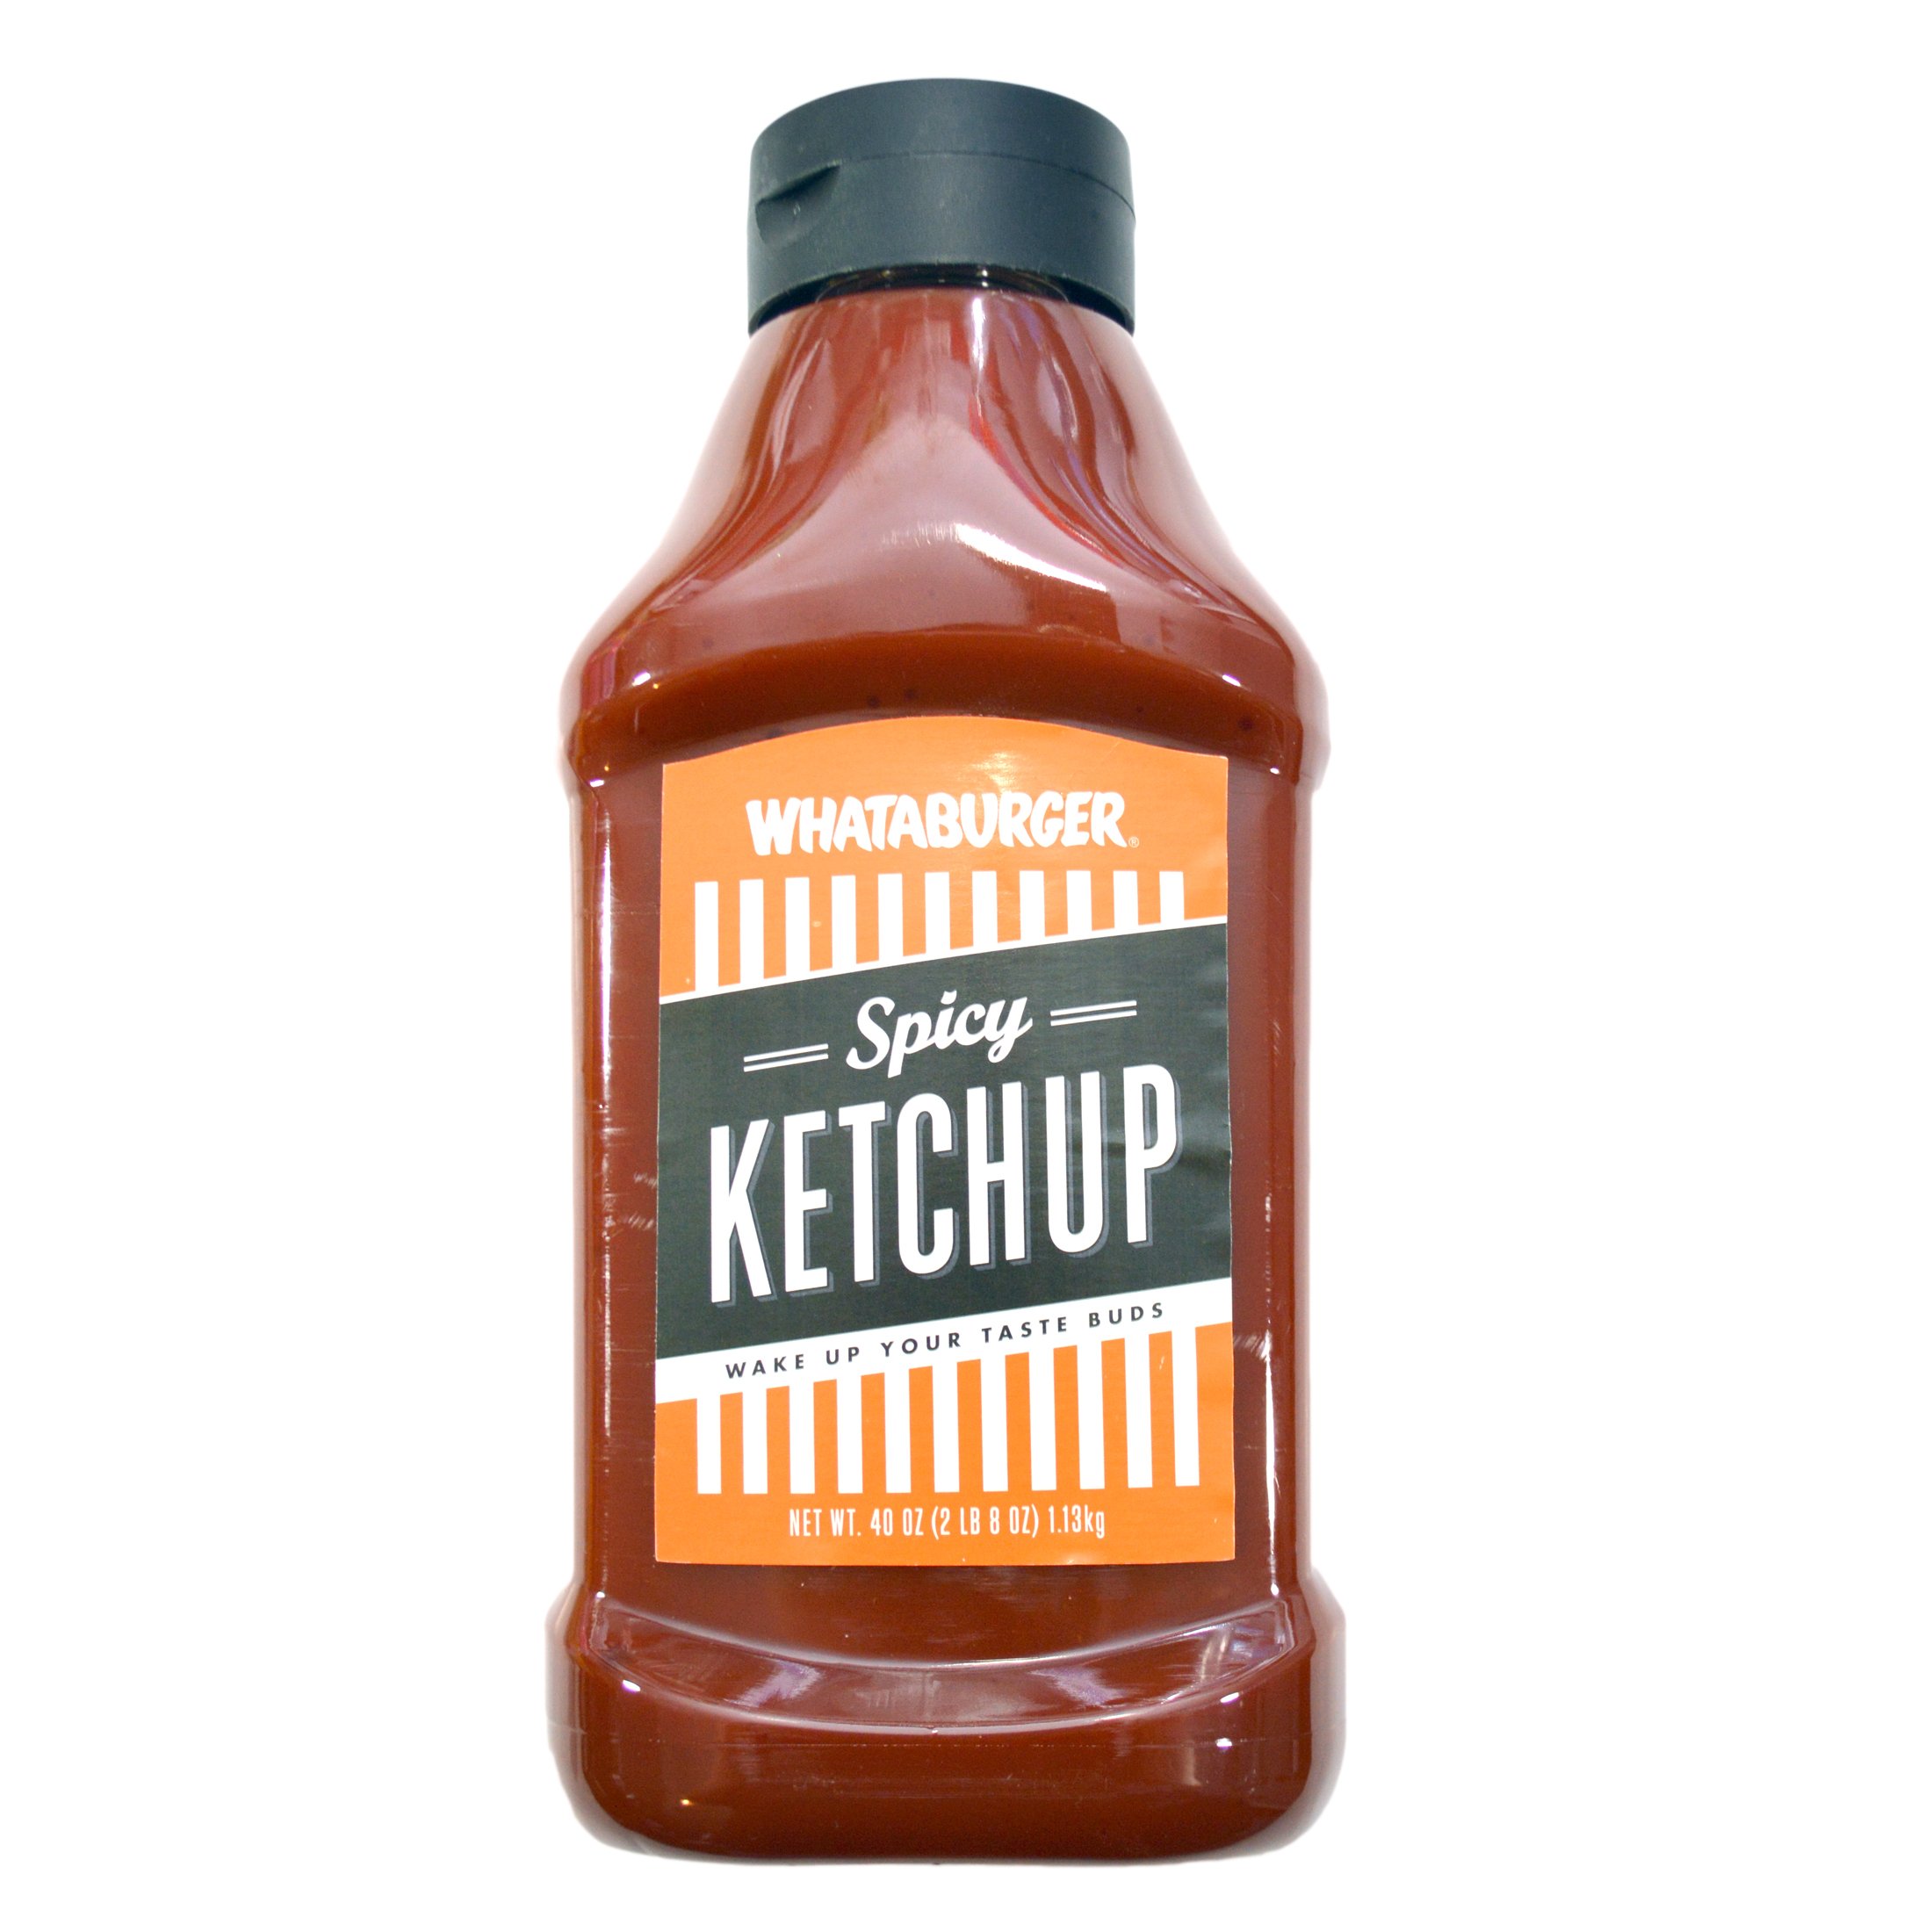 Whataburger Ketchup, Spicy - 20 oz